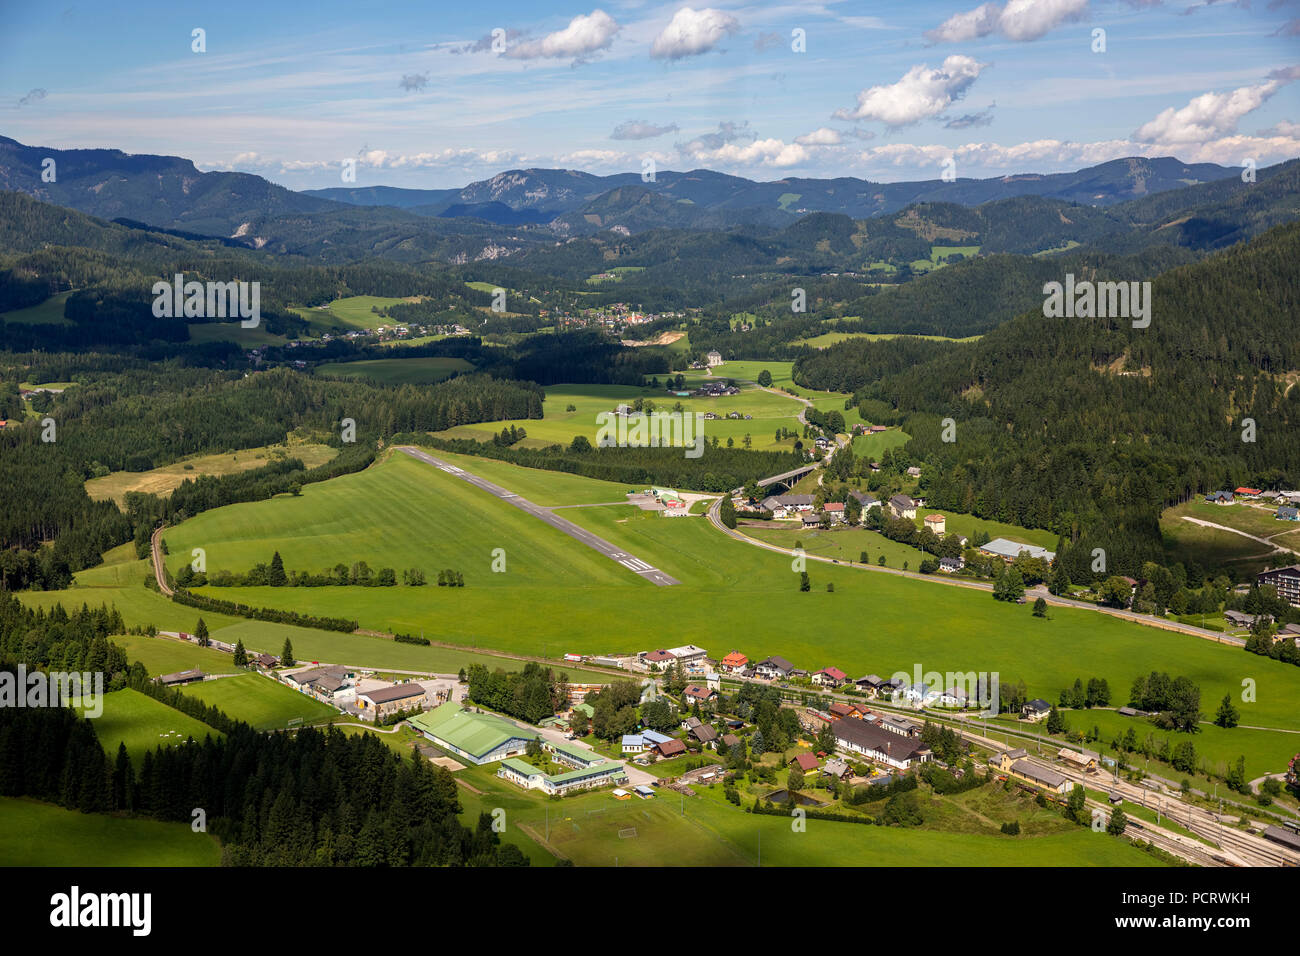 Vue aérienne de l'aérodrome, Mariazell, Mariazell, Alpenflug (aviation company), Styrie, Autriche Banque D'Images